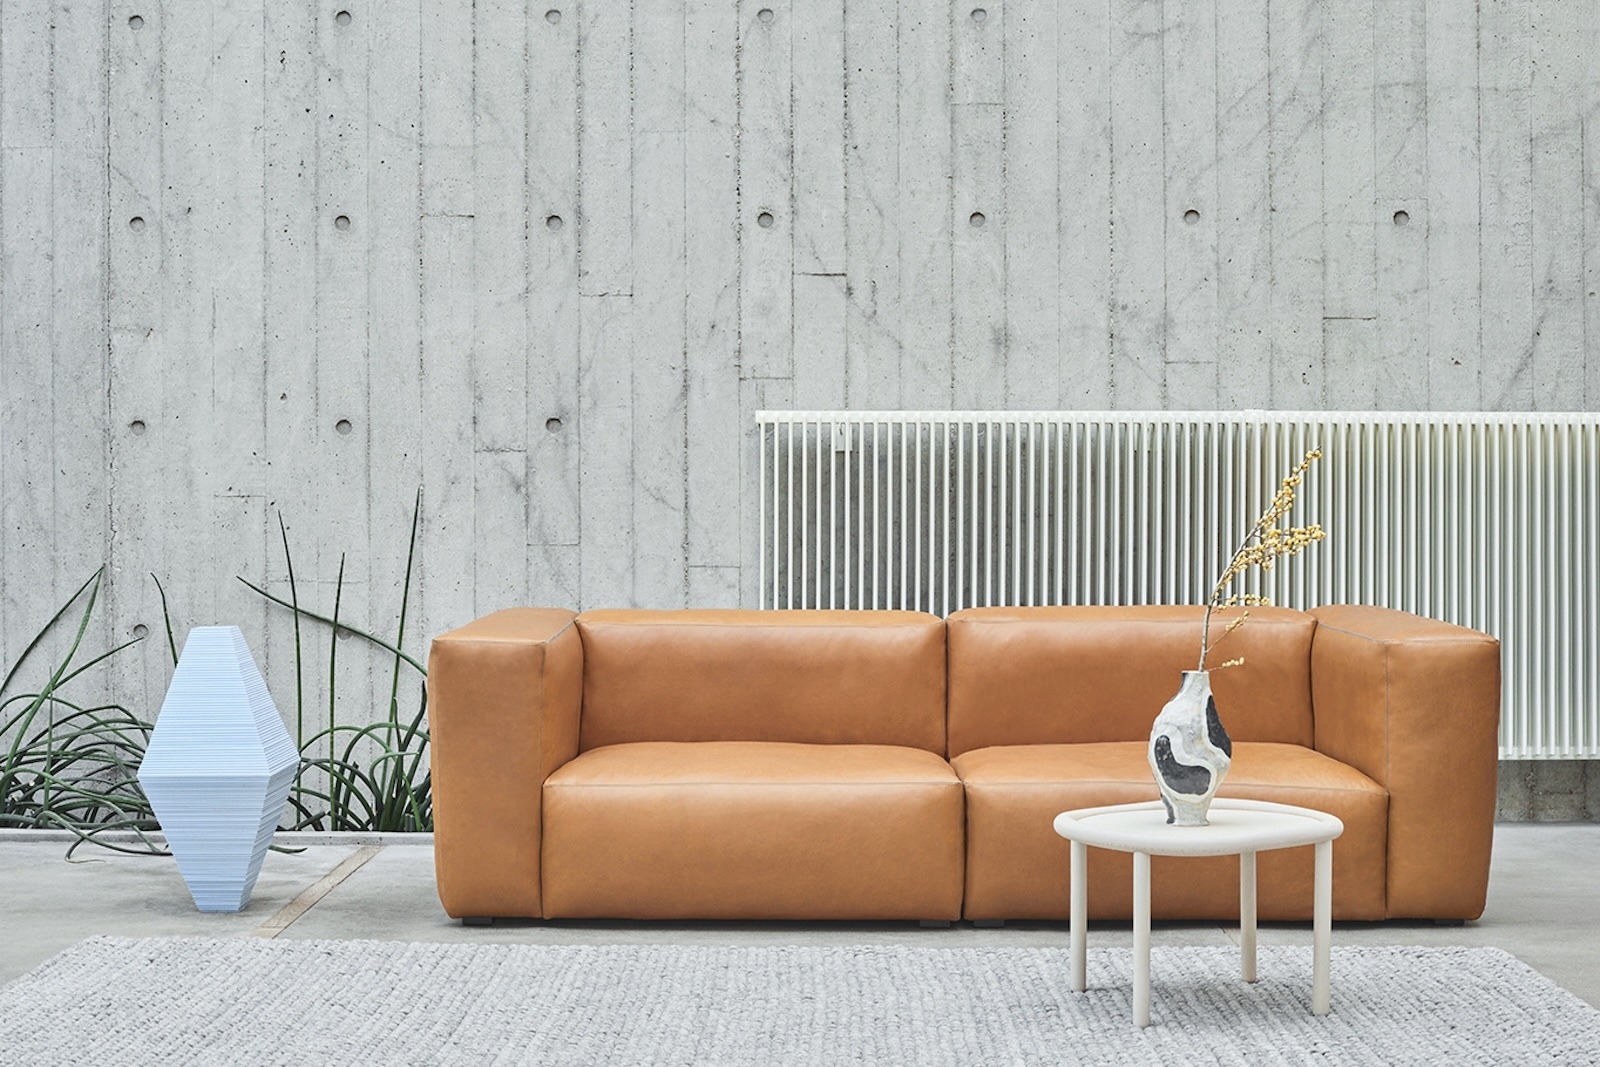 Materialguide Sofa: Alles rund um Polsterpflege